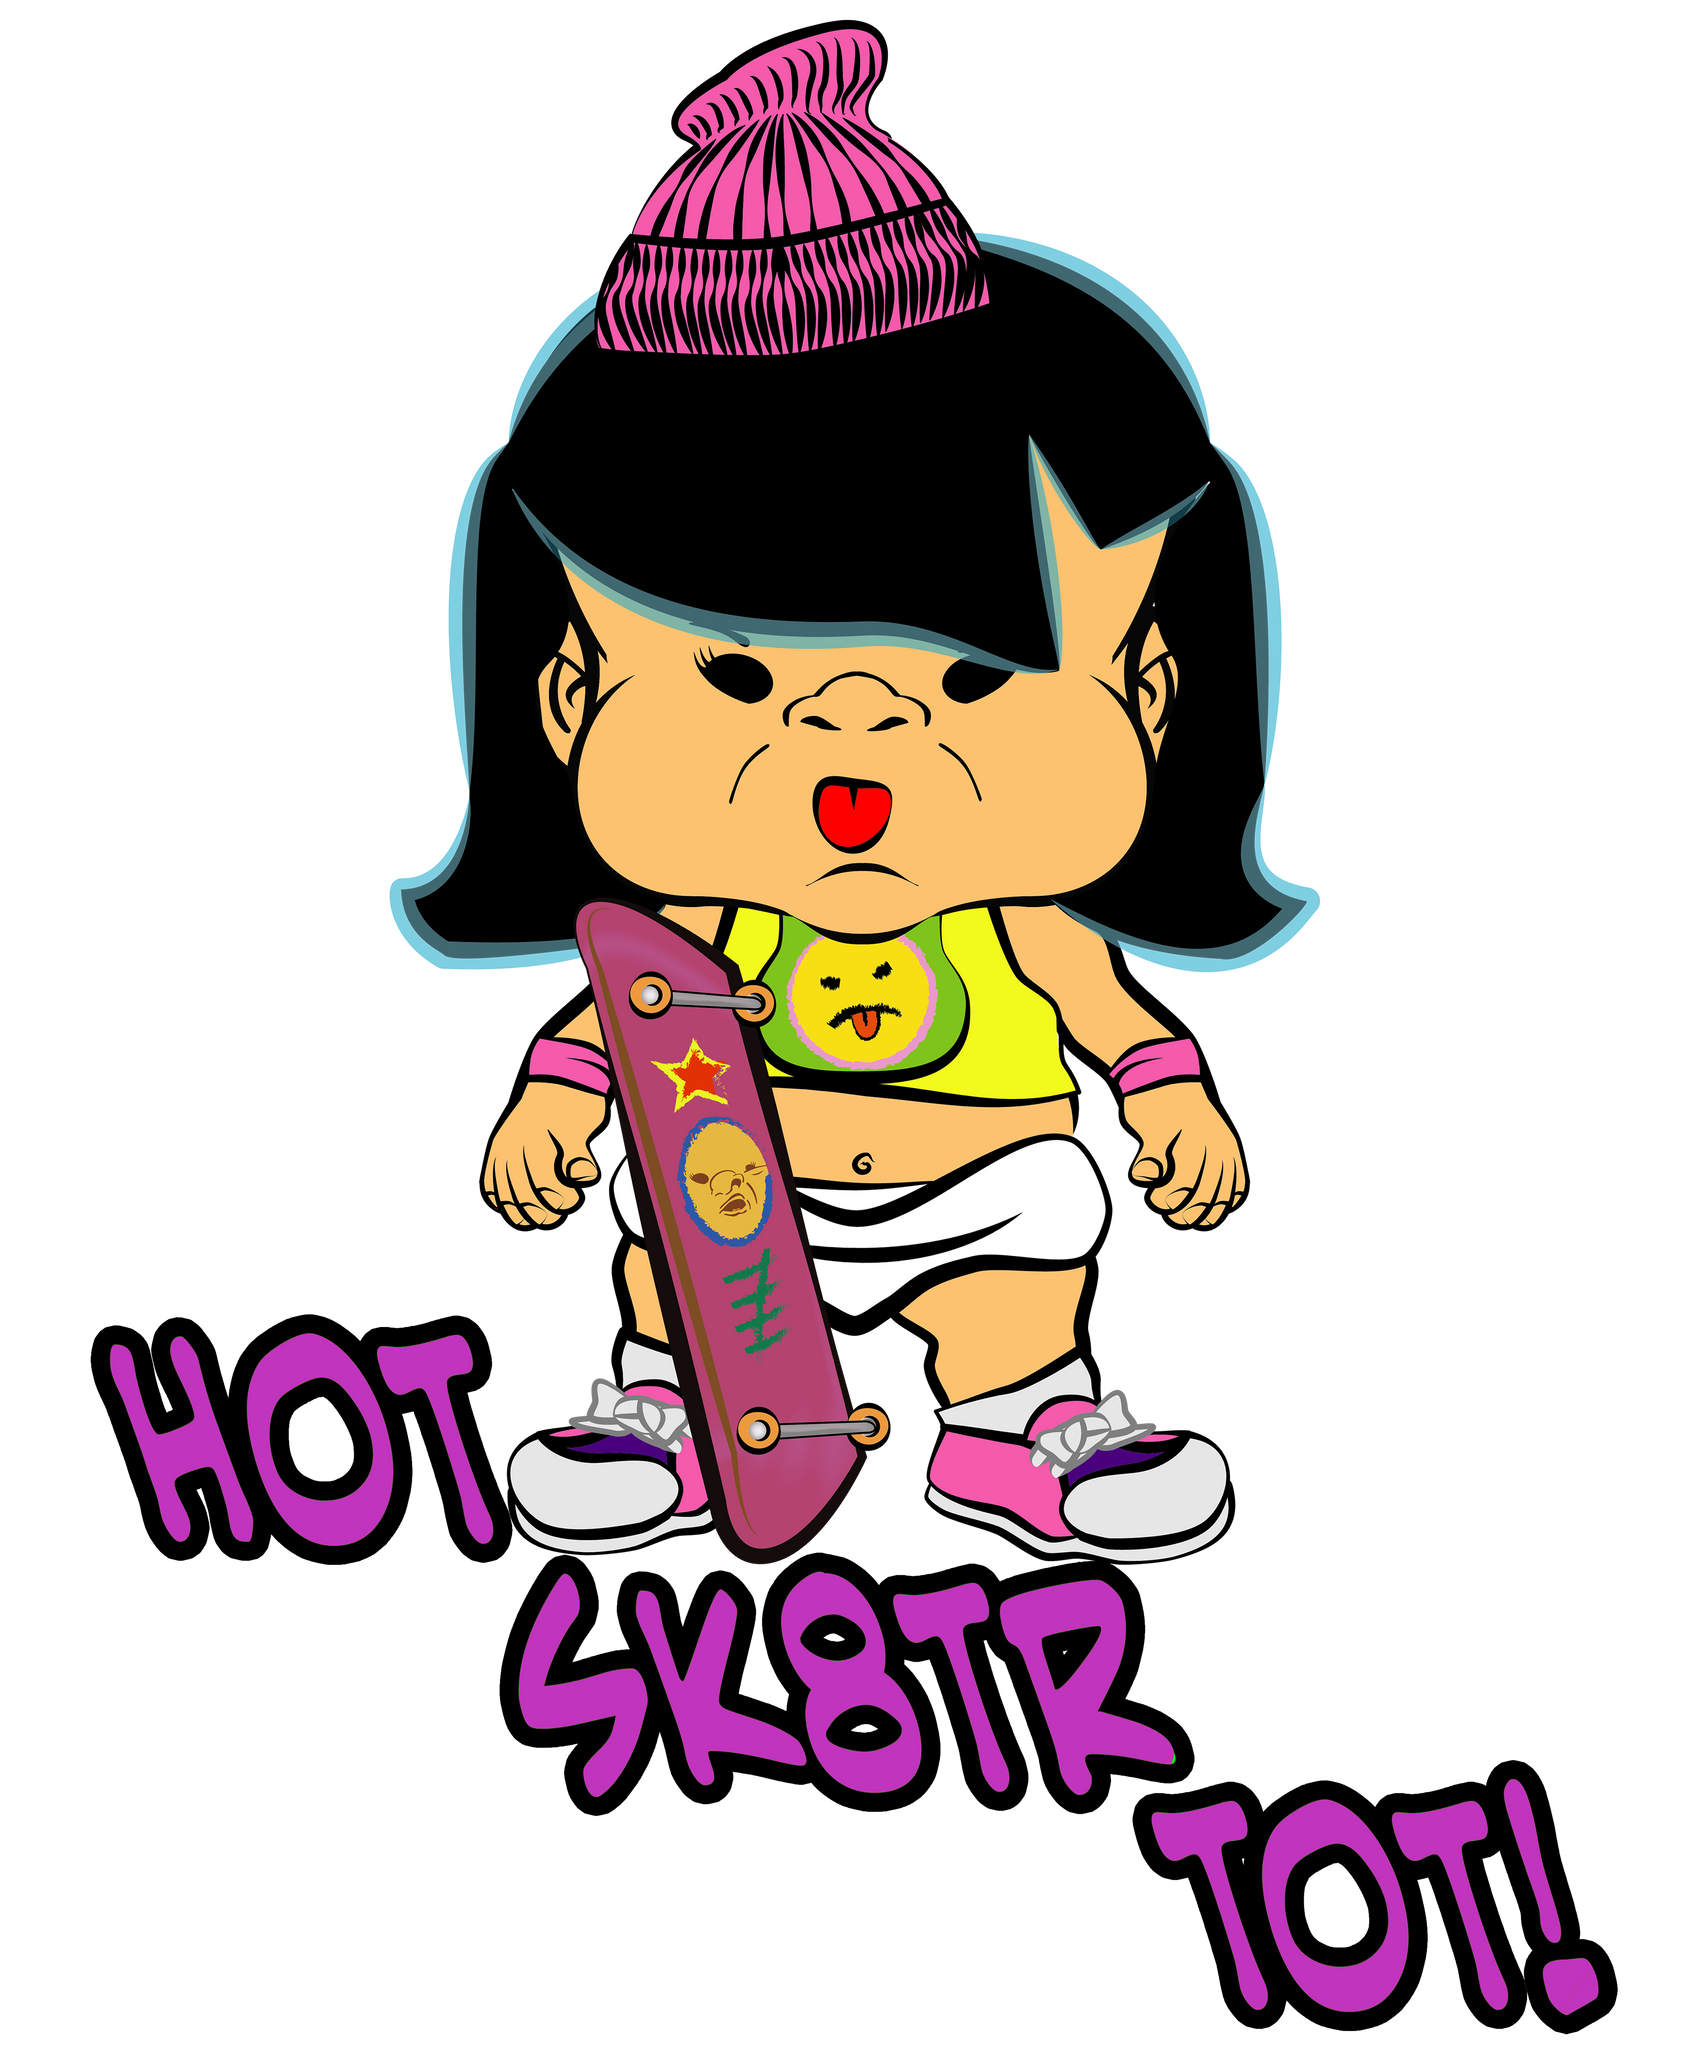 PBCZ1020_Skaterz_hot_sk8tr_tot_girl_1